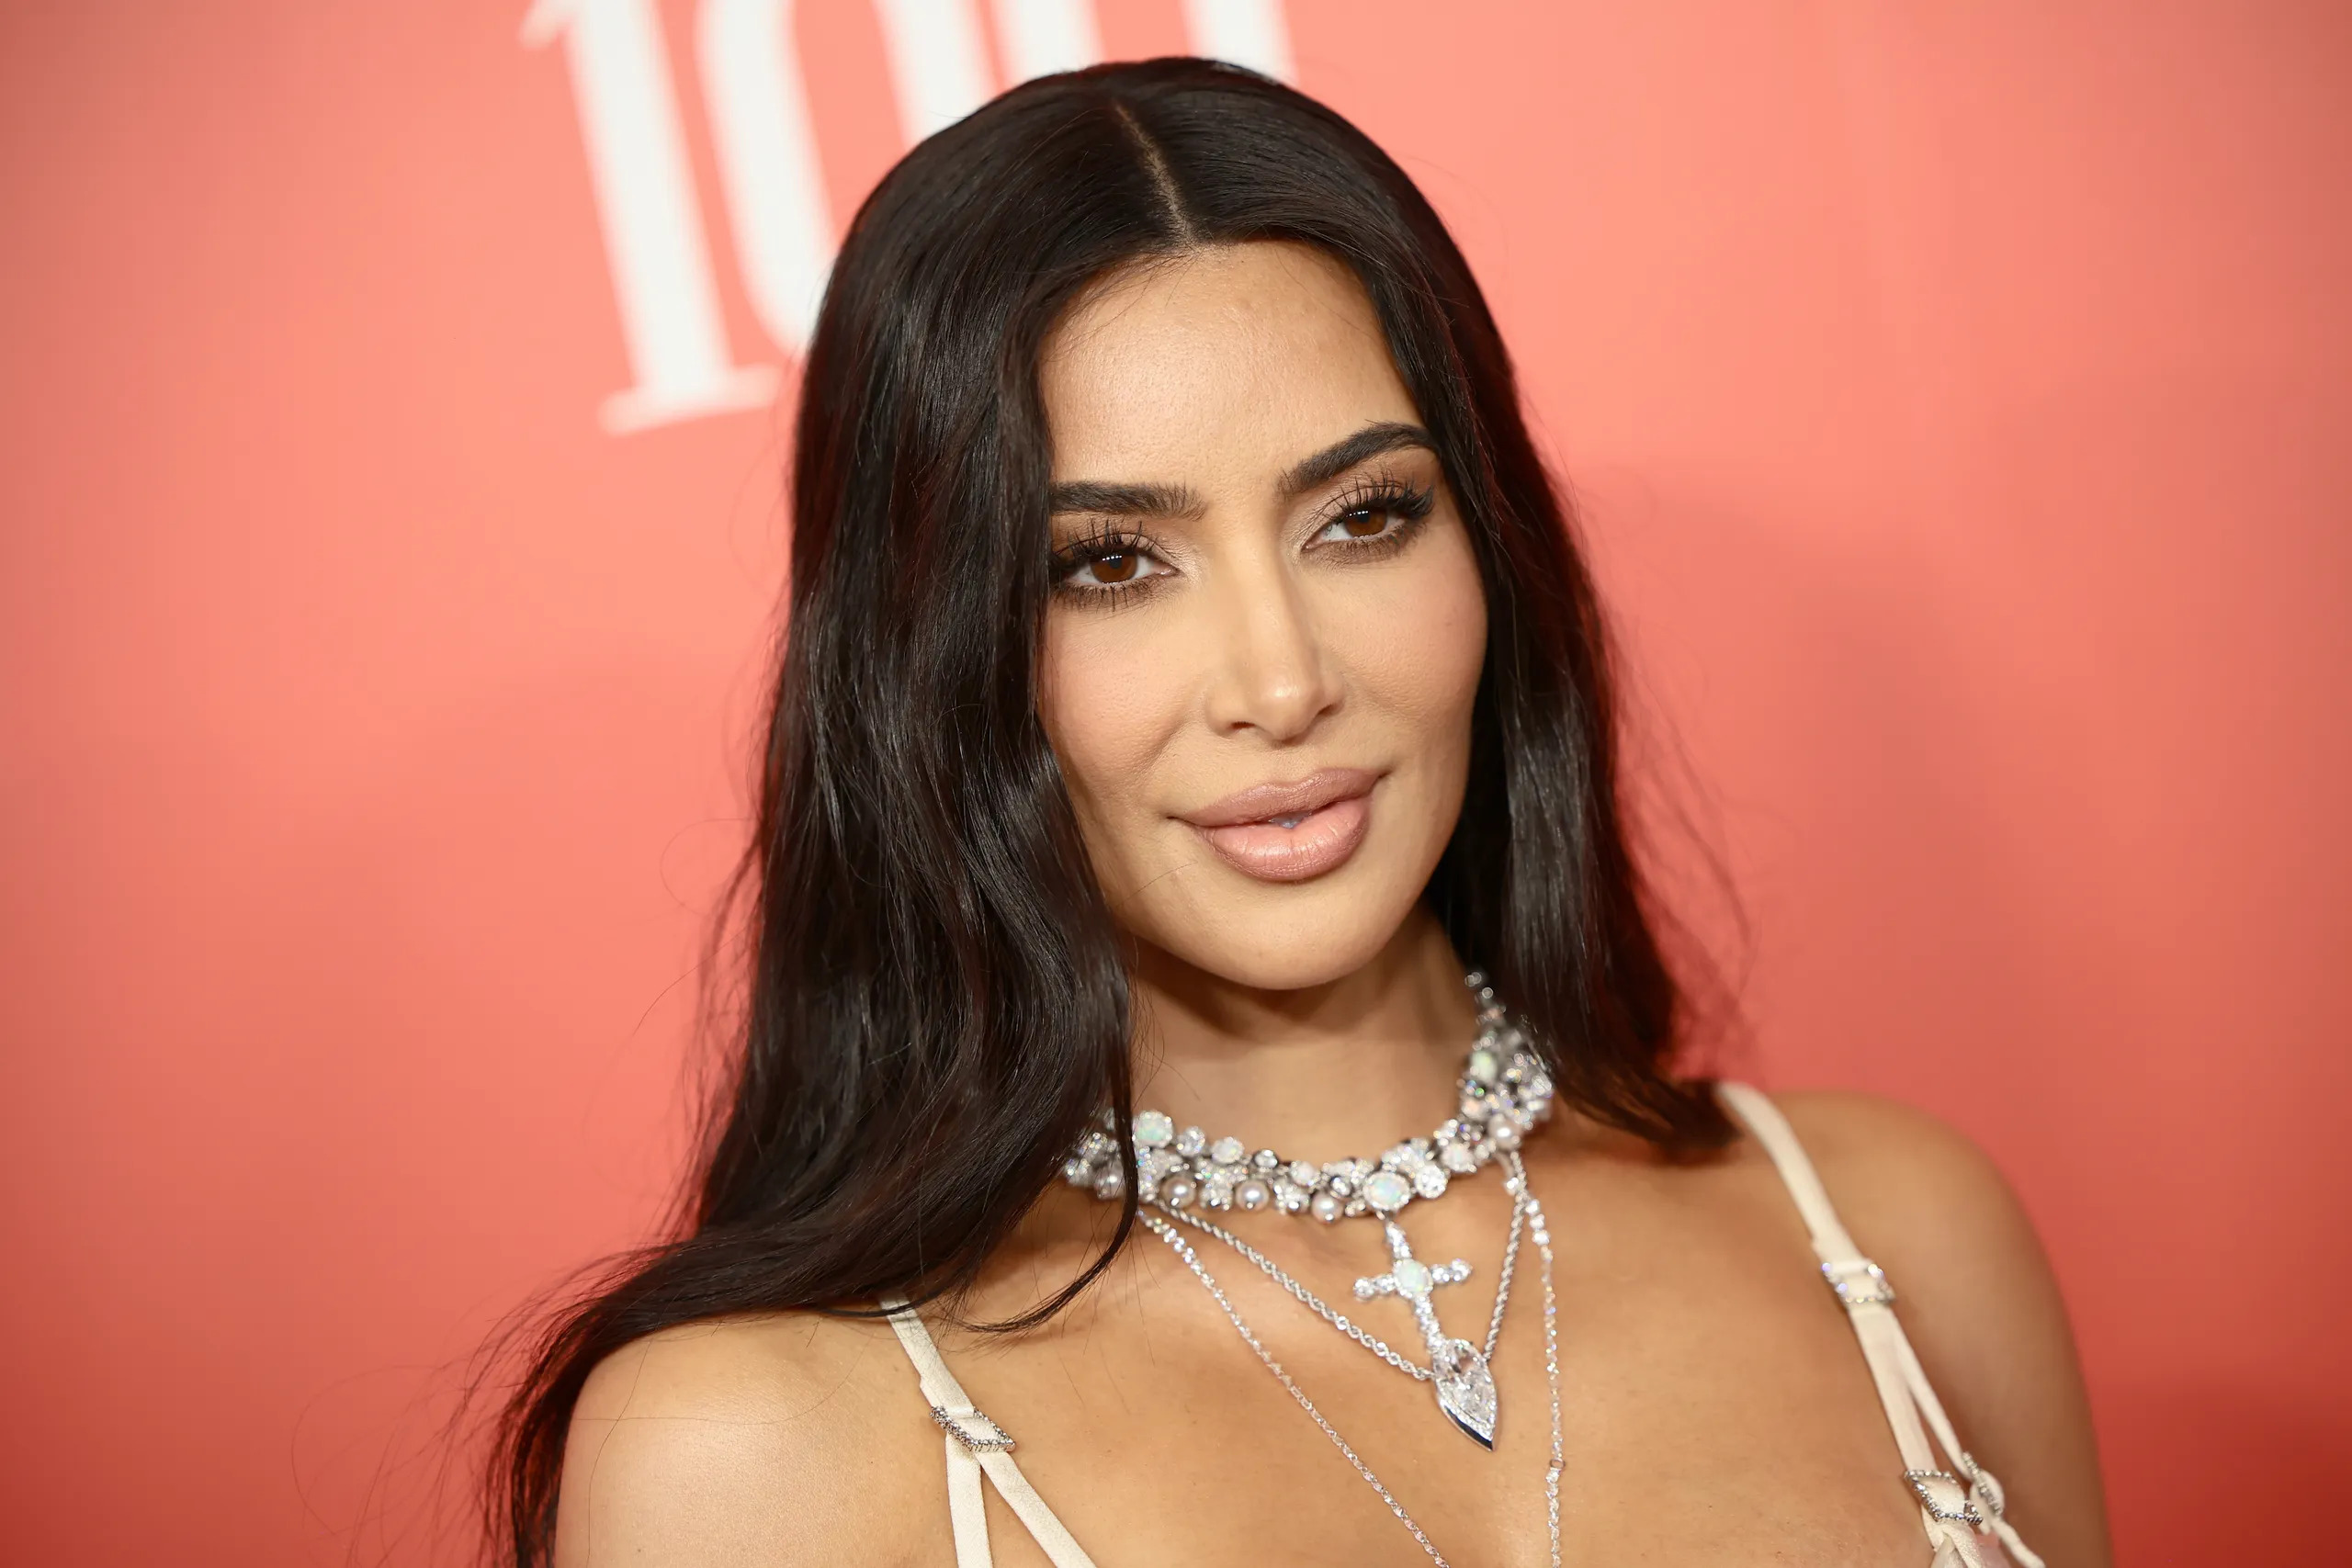 32 Facts About Kim Kardashian